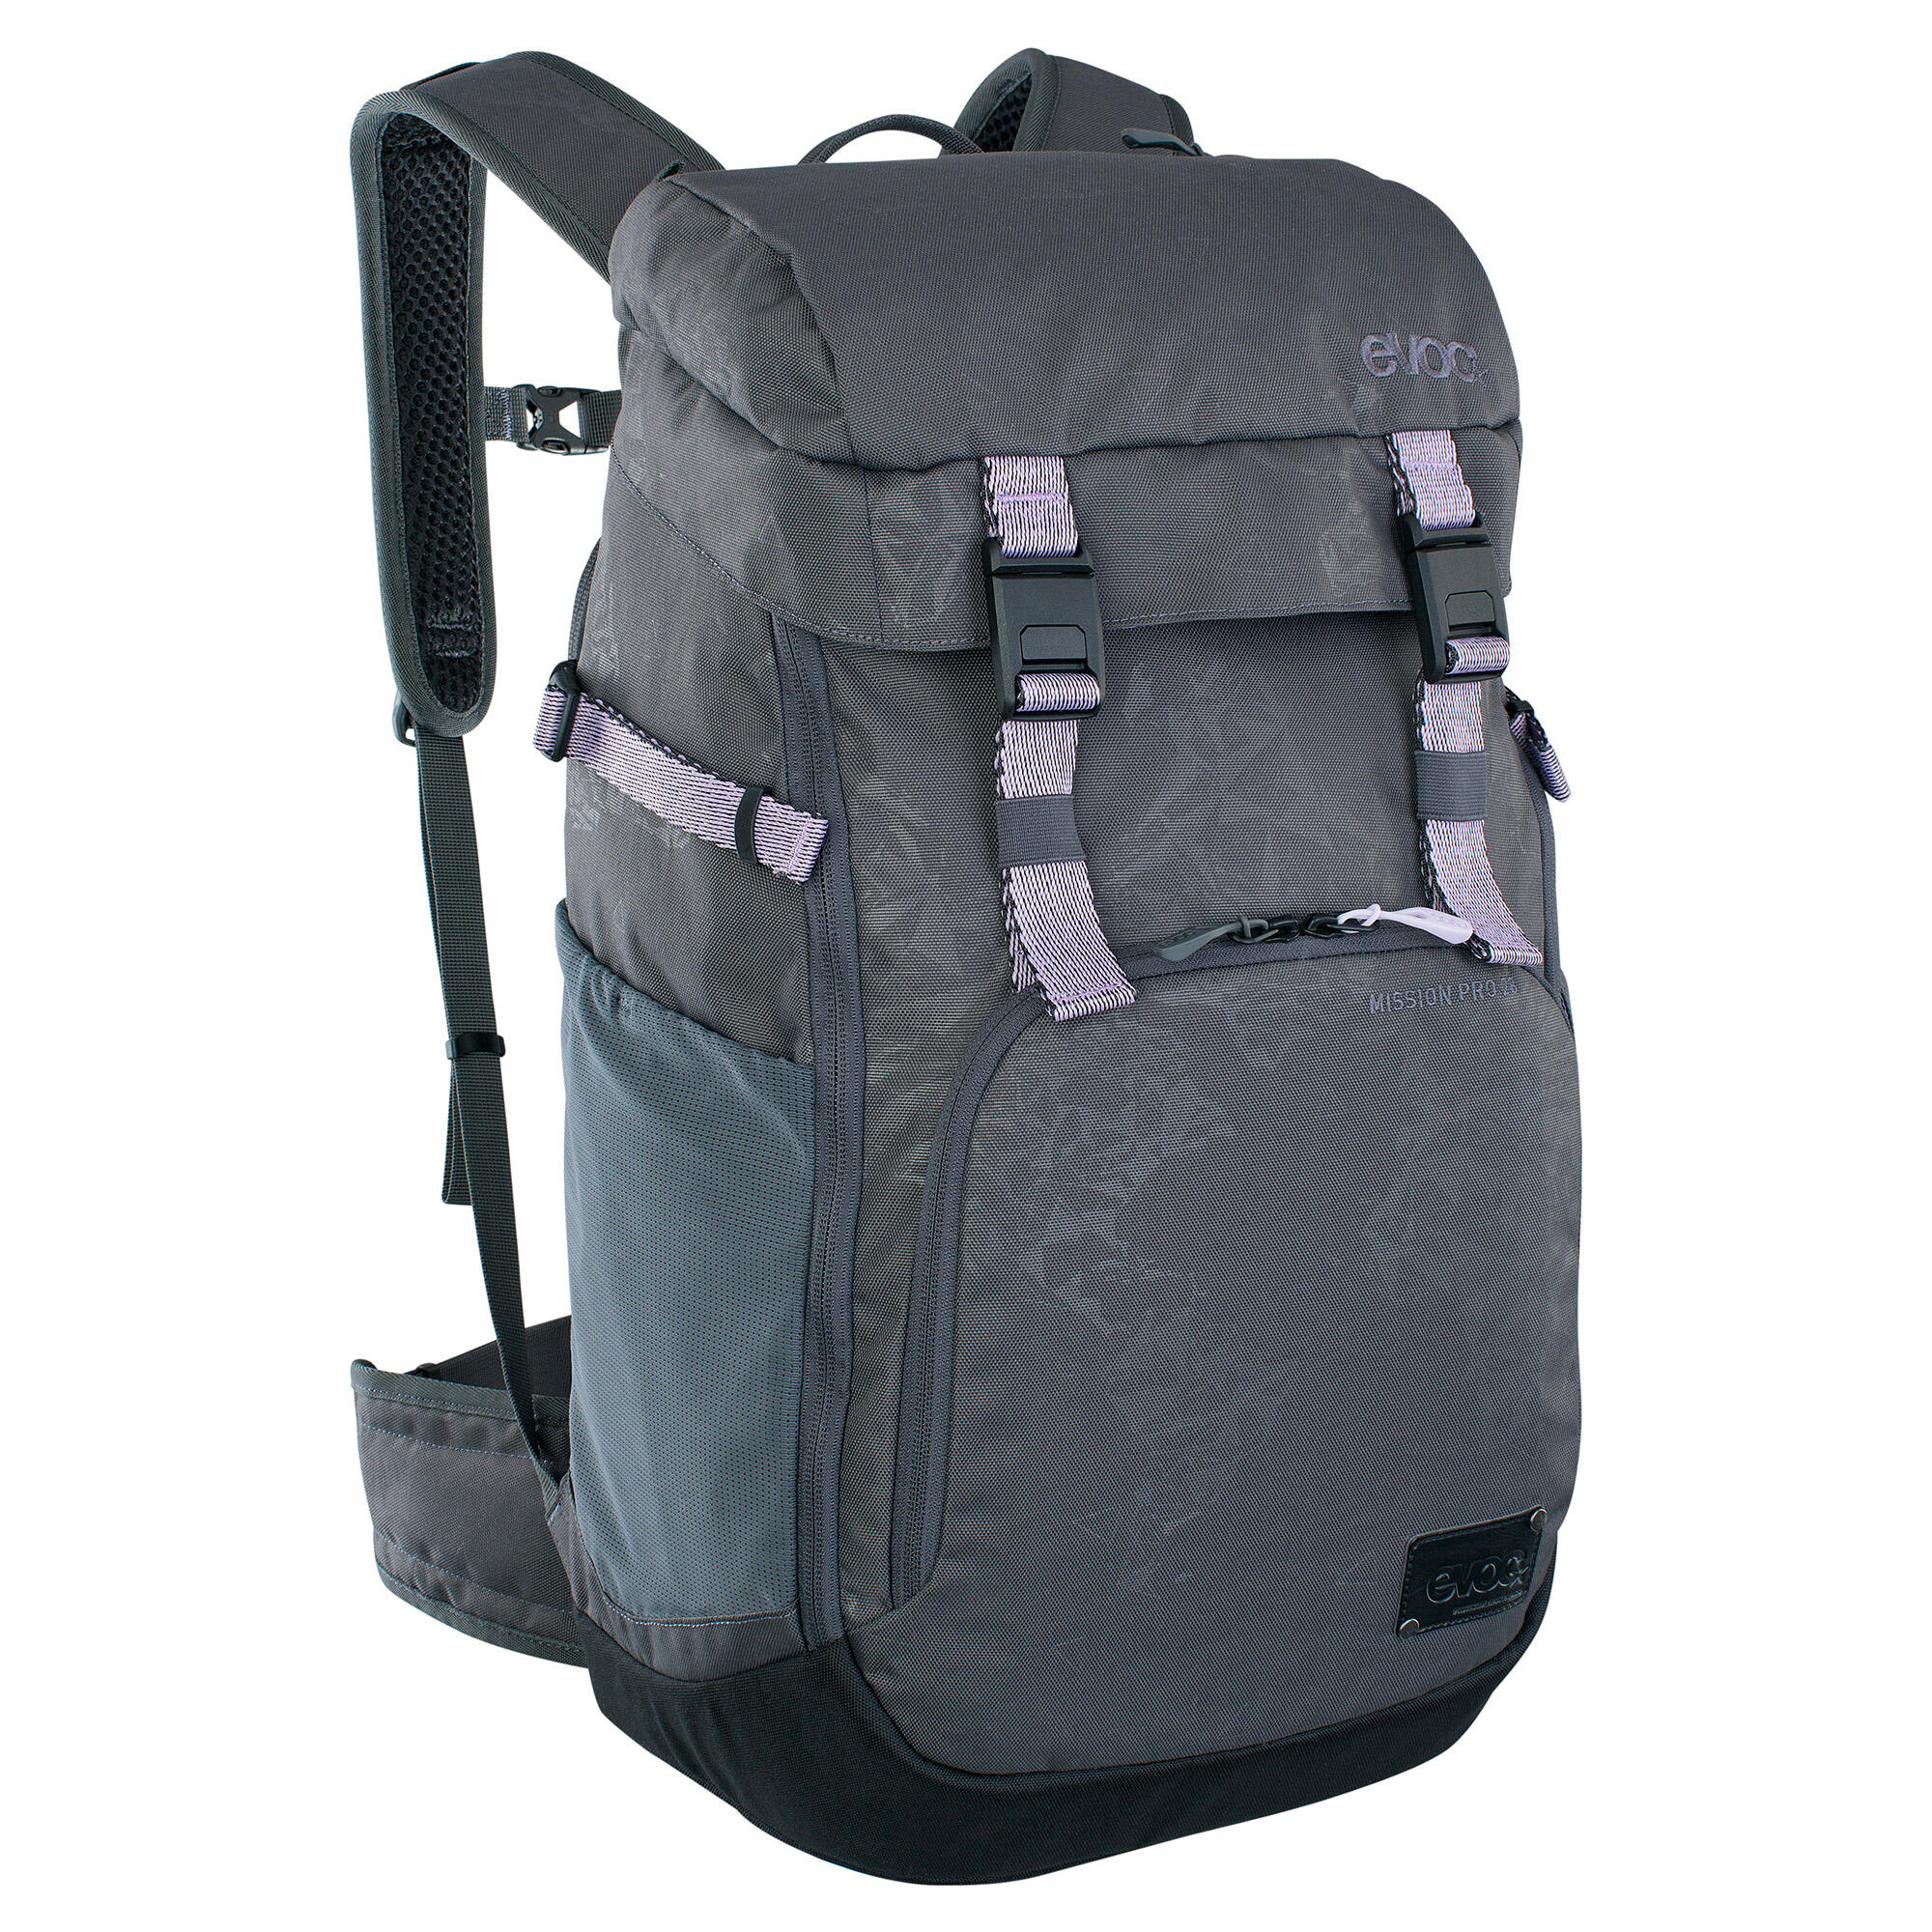 EVOC Mission Pro Backpack 1/7